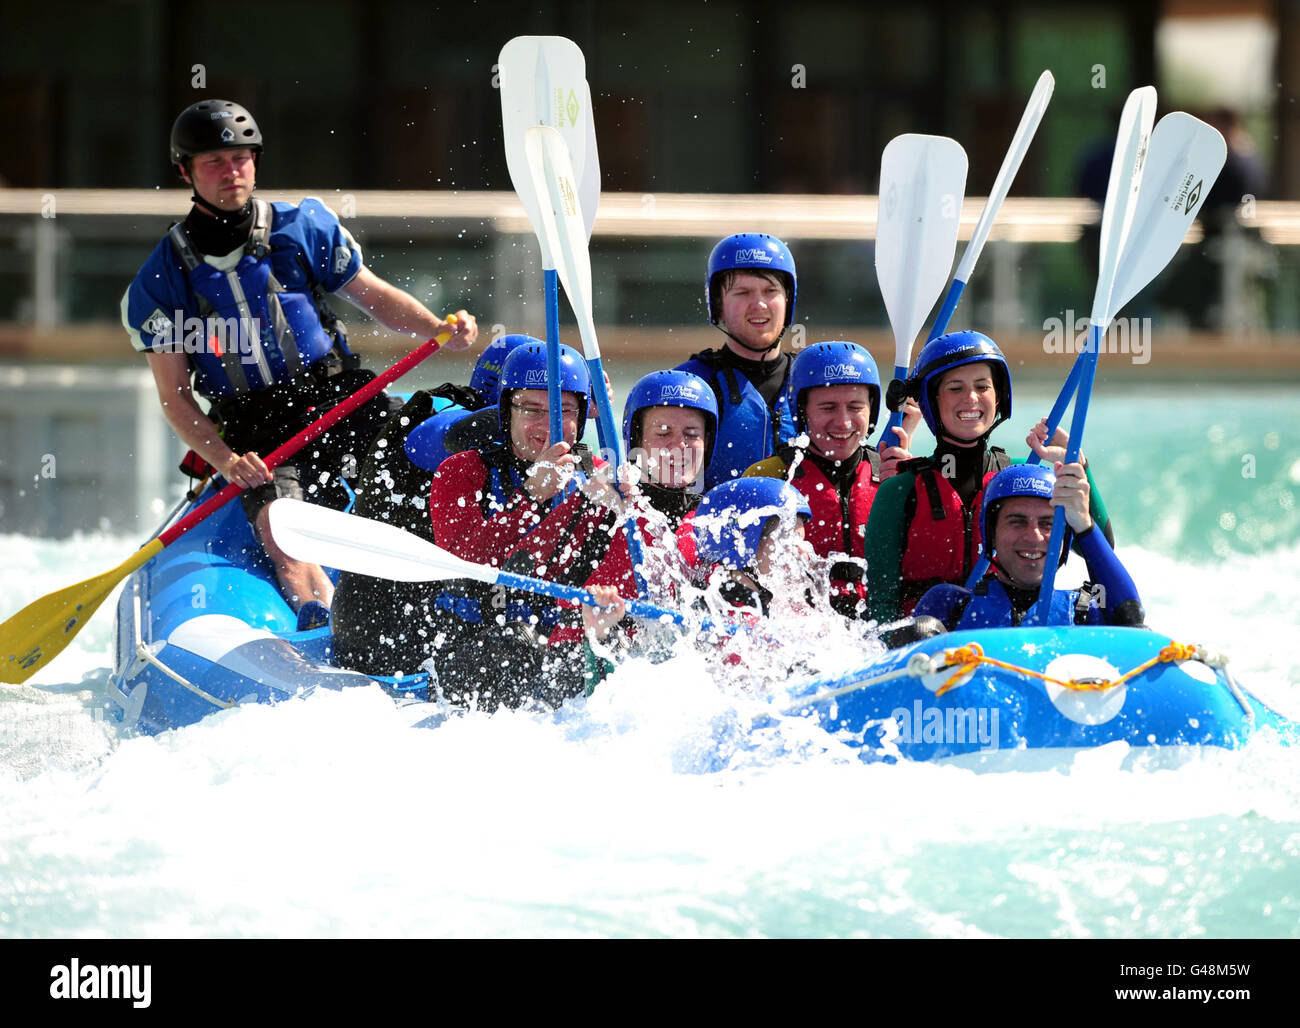 Le journaliste Ian Steadman de l'Association de la presse a goûte le cours de canoë-kayak olympique lors de la journée des médias du Lee Valley White Water Centre, dans le Hertfordshire. Banque D'Images